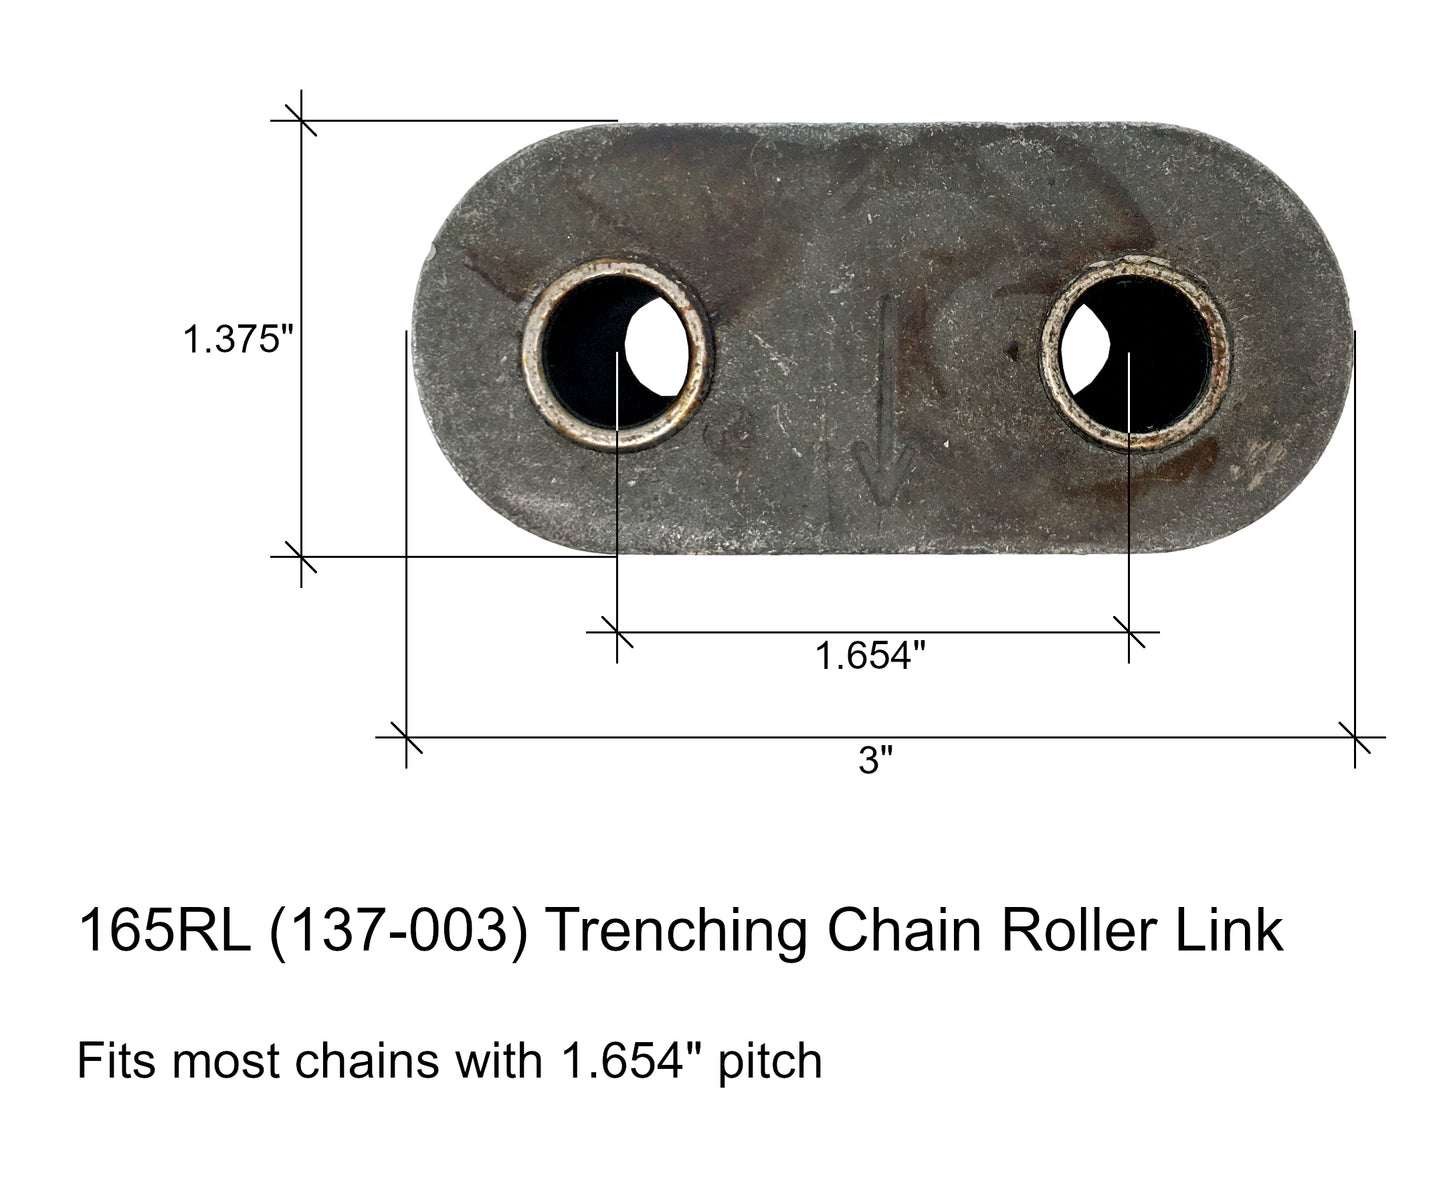 Maillon de rouleau de chaîne de tranchée, convient aux chaînes avec pas de 1,654" - 137-003, 165RL